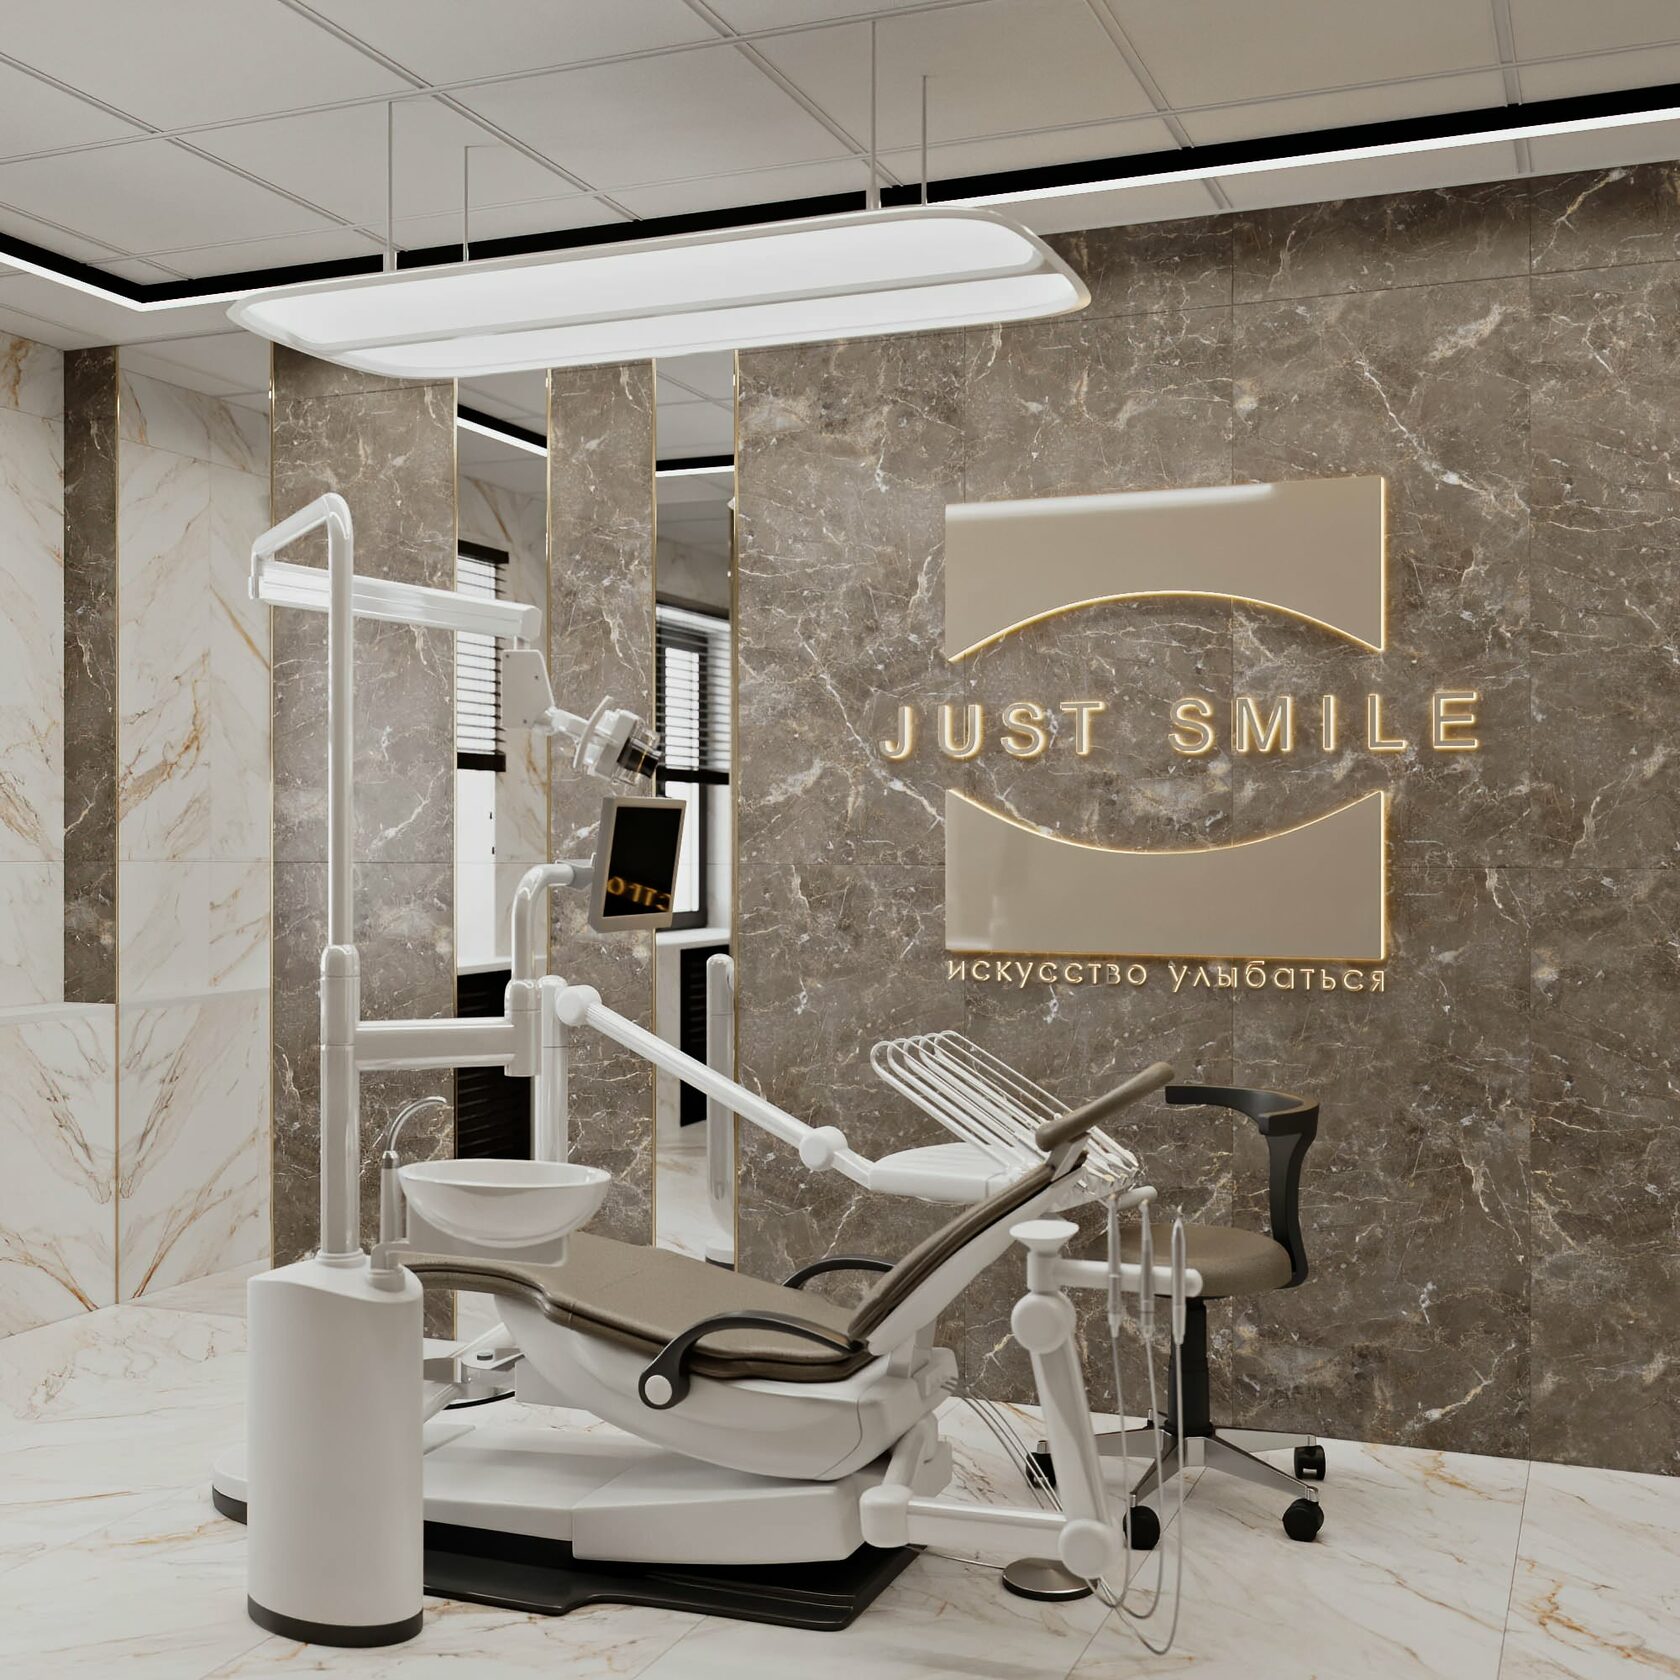 Дизайн интерьера стоматологических клиник и зуботехнических лабораторий